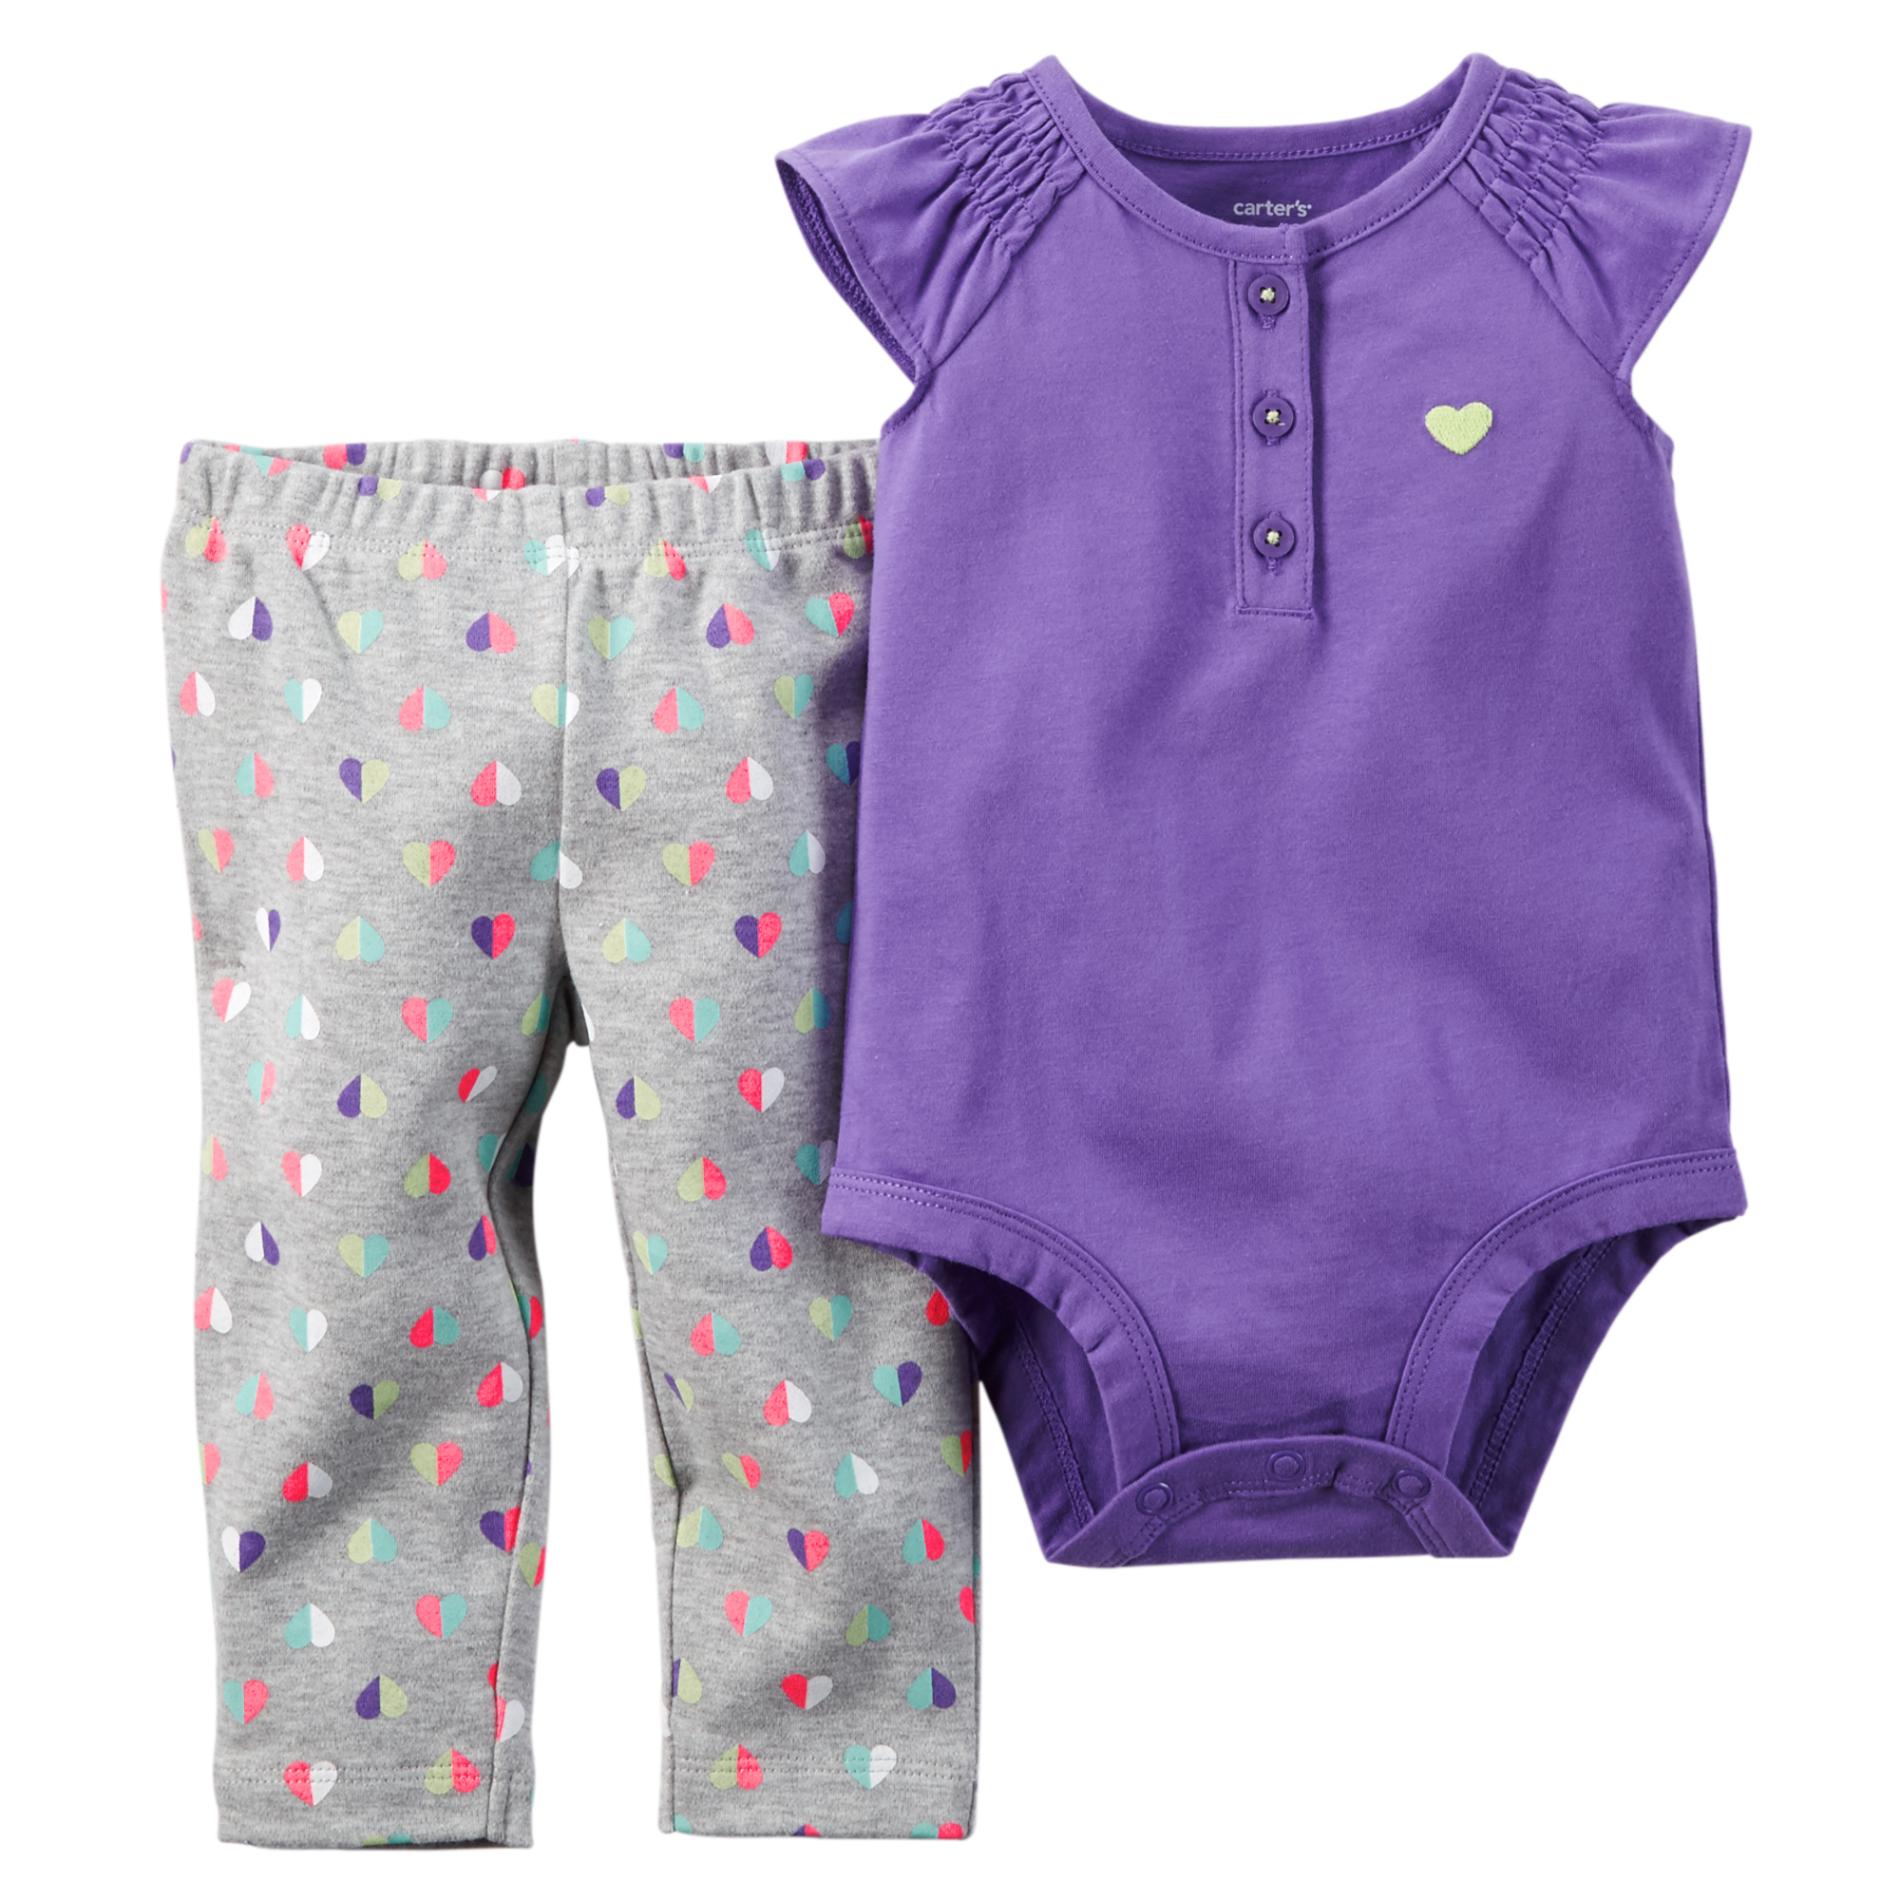 Carter's Newborn & Infant Girl's Bodysuit & Leggings - Hearts